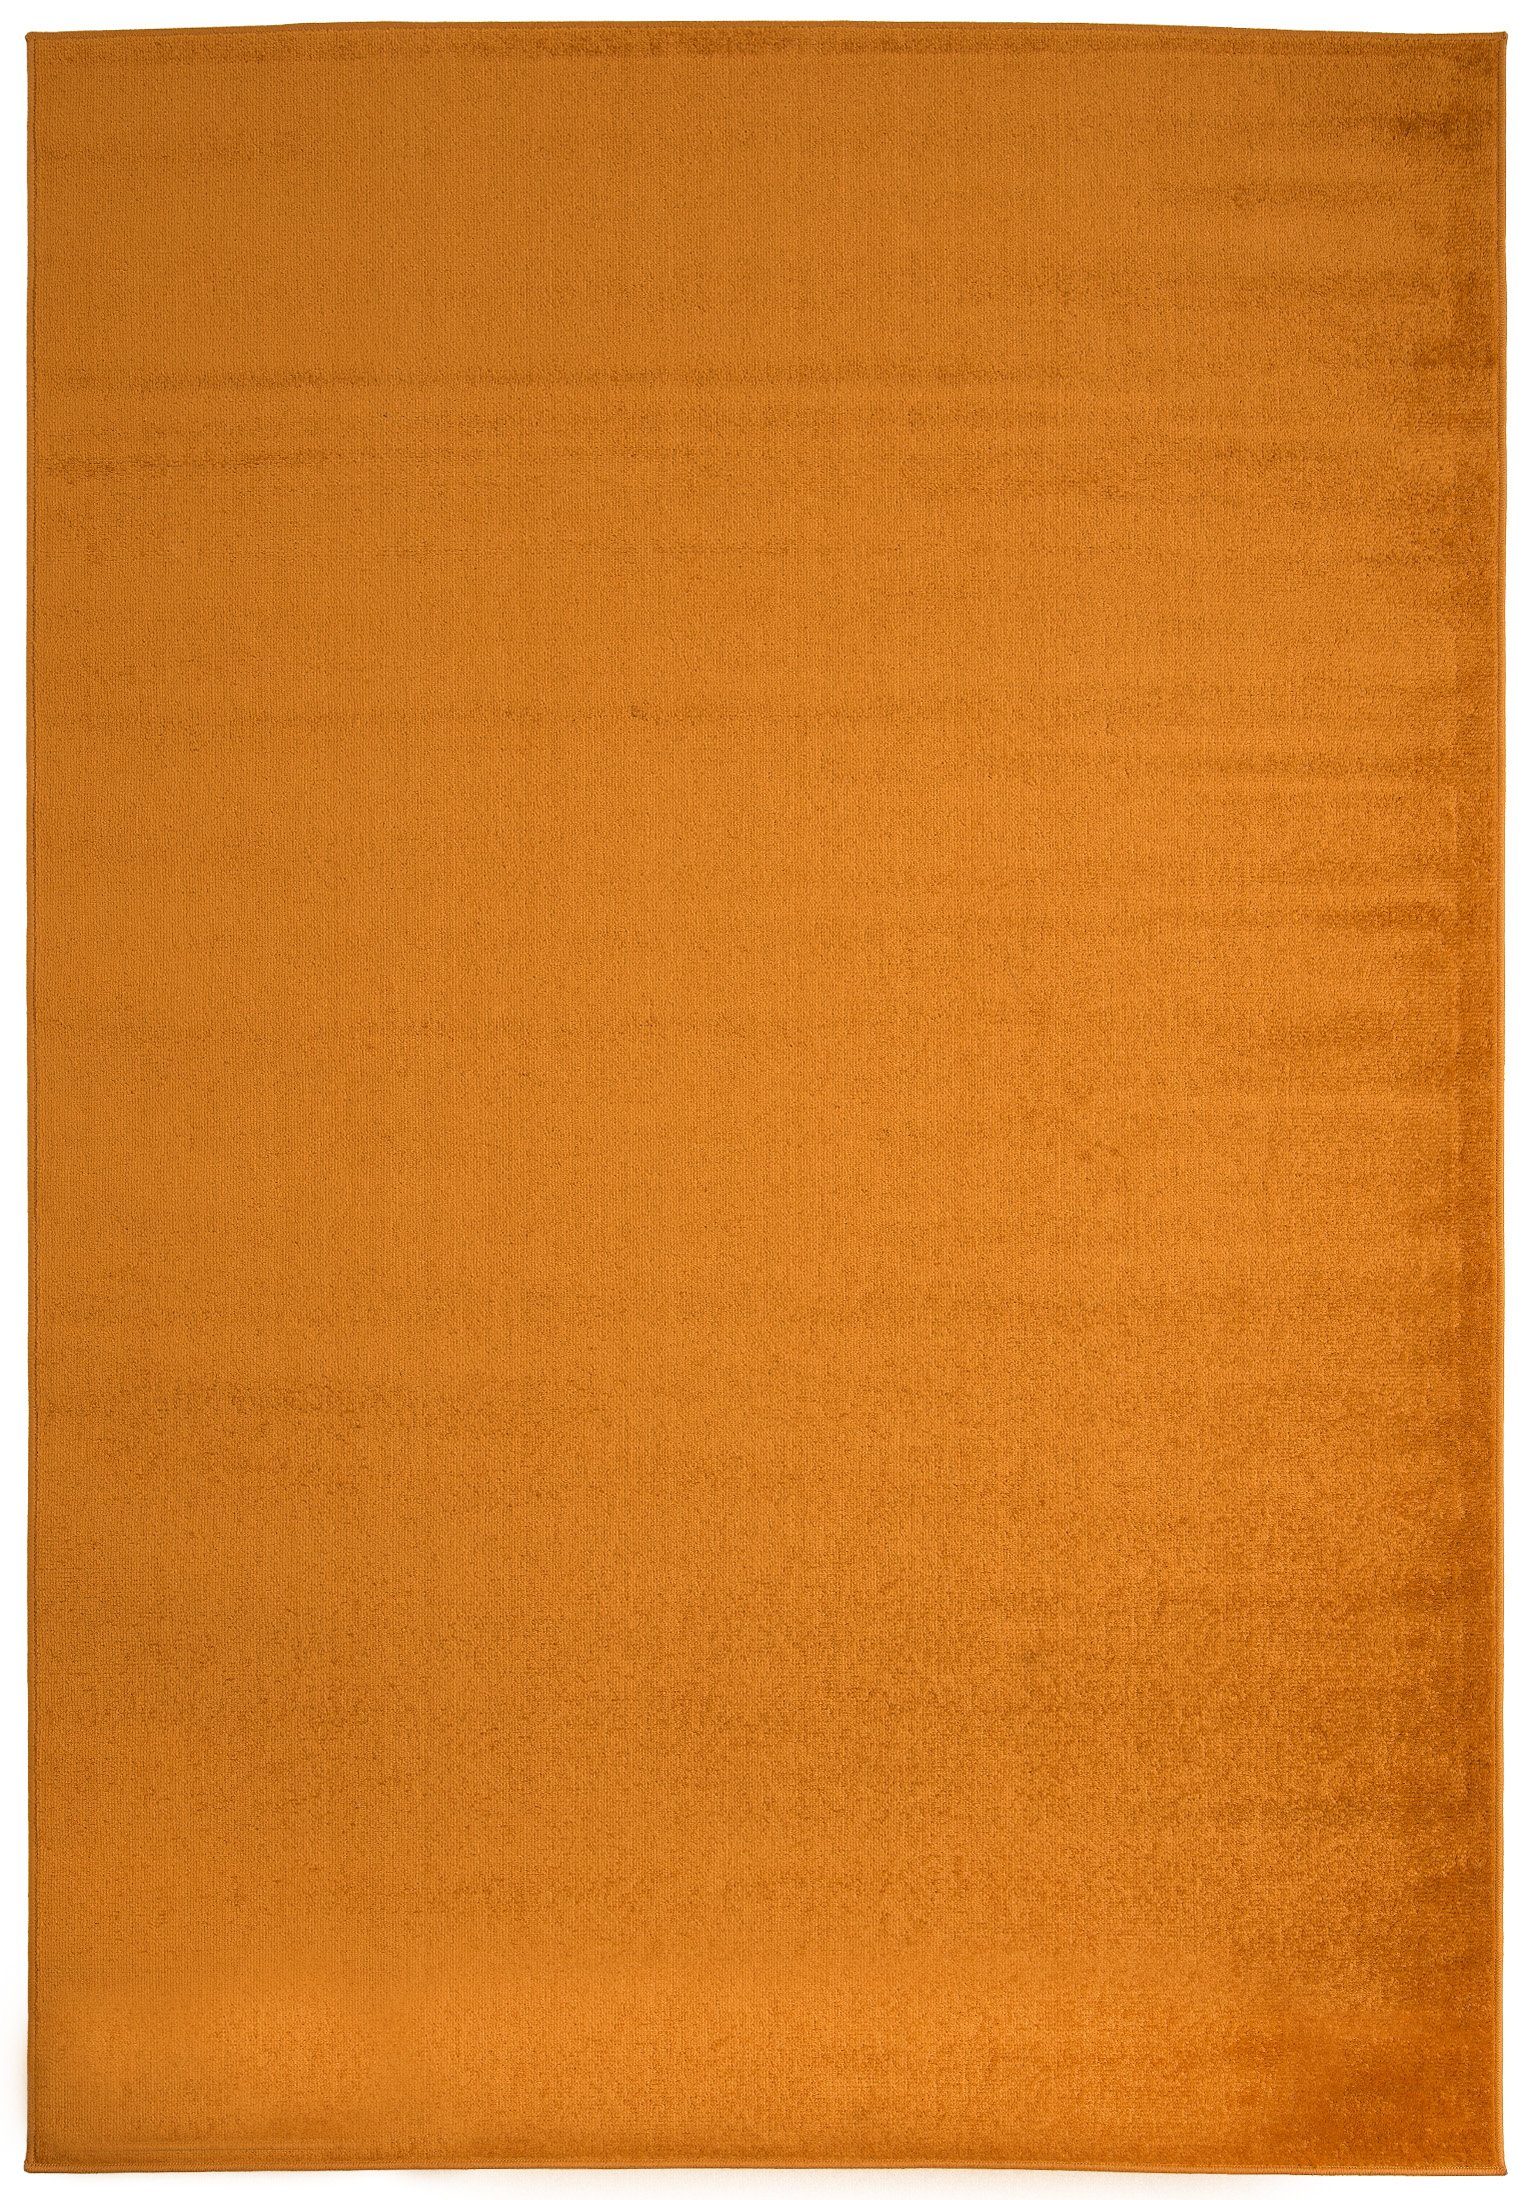 Designteppich Modern Teppich Einfarbig Muster Orange farbe - Kurzflor, Mazovia, 120 x 170 cm, Geeignet für Fußbodenheizung, Höhe 7 mm, Kurzflor | Alle Teppiche